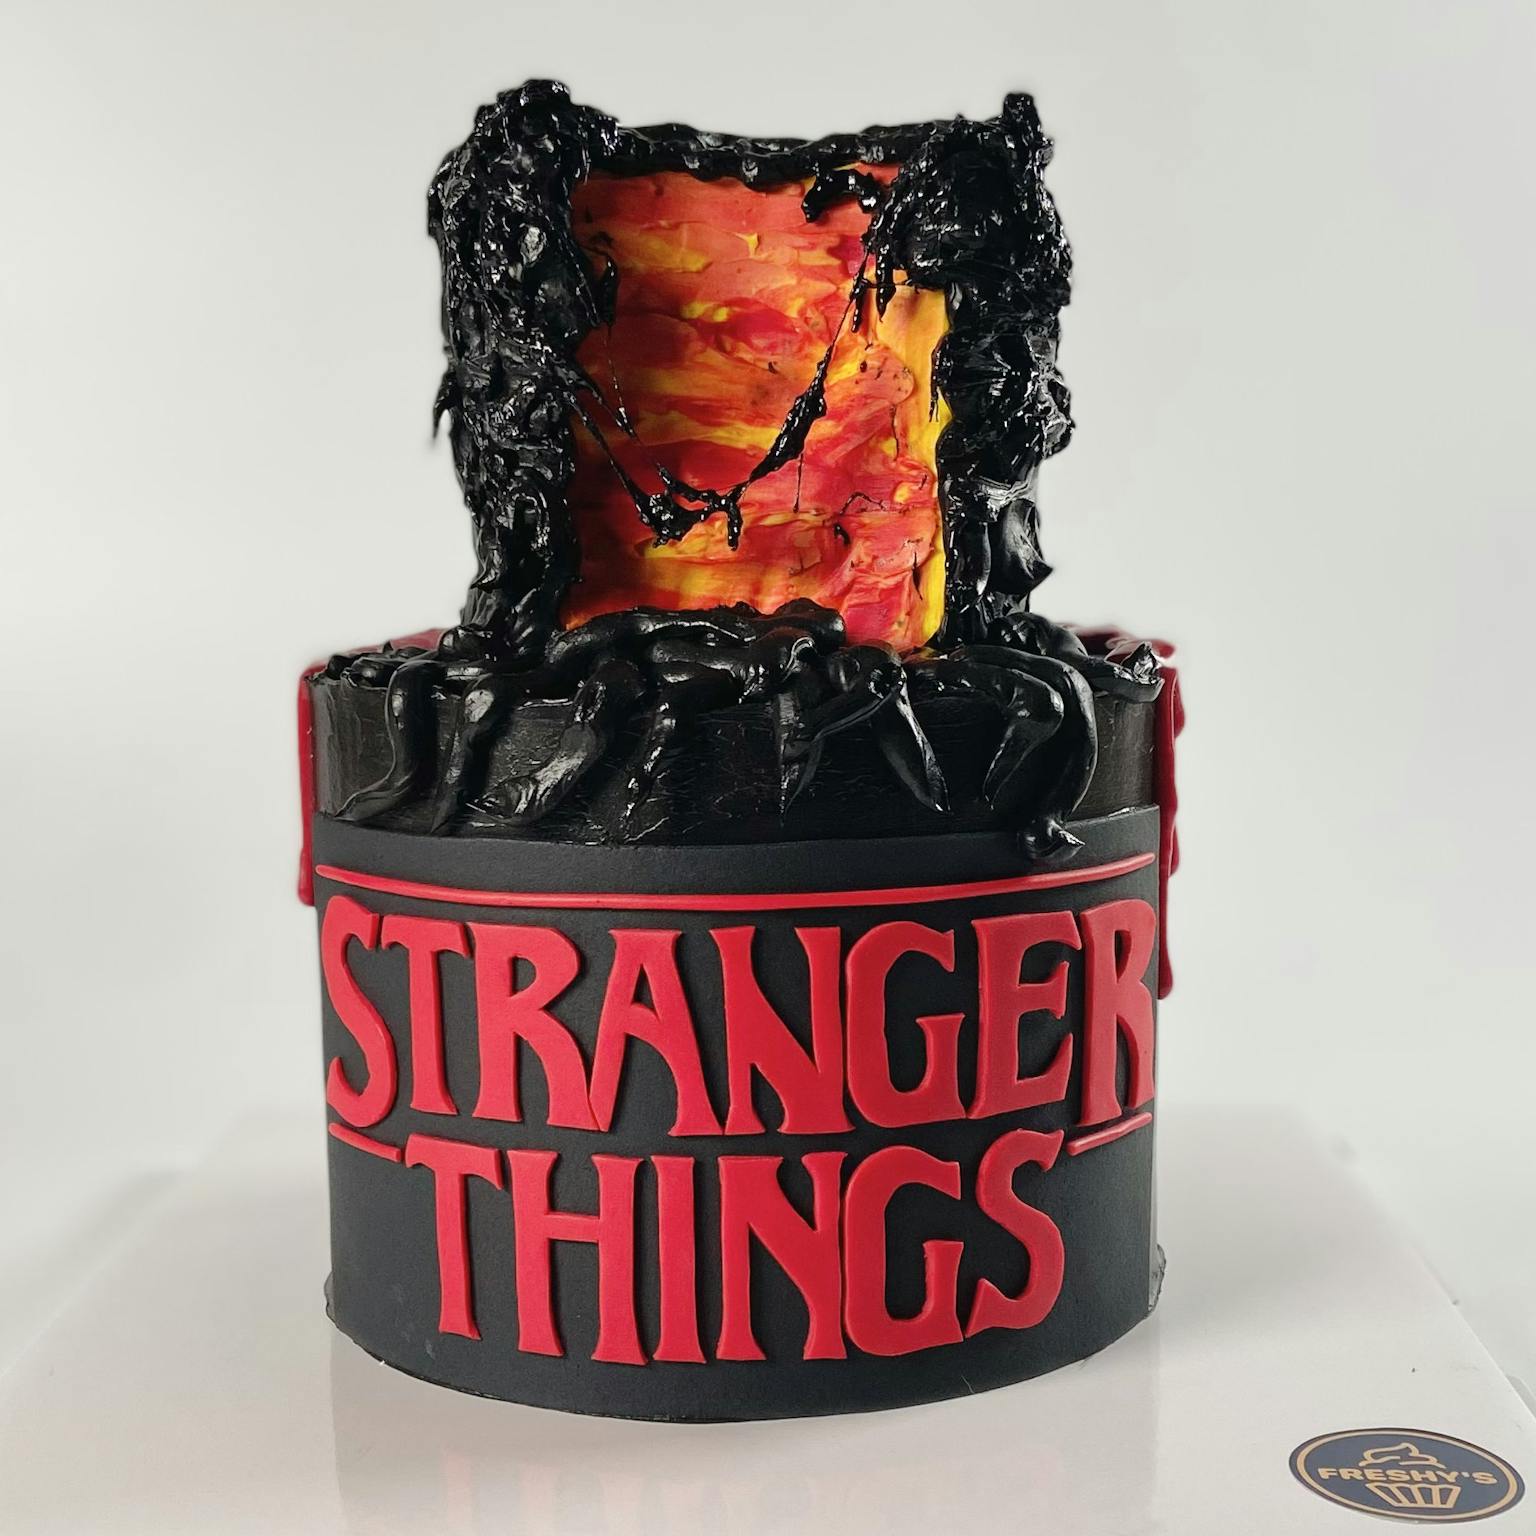 Stranger Things upside down cake